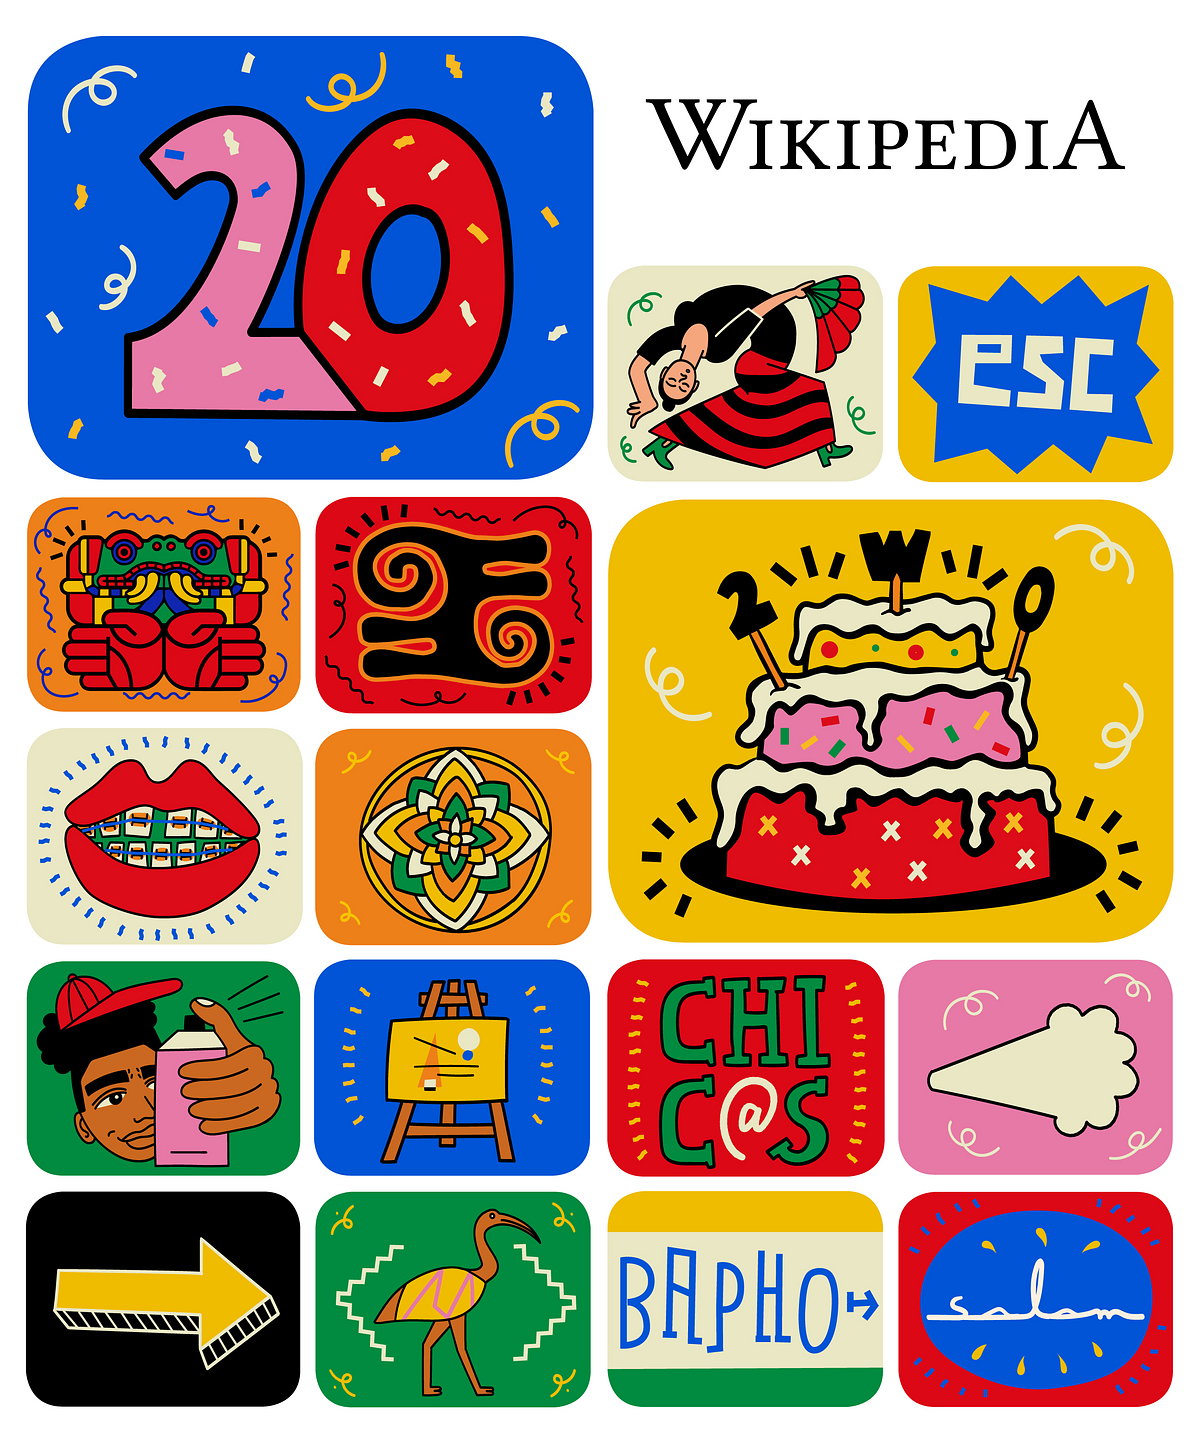 Википедия праздничный дизайн